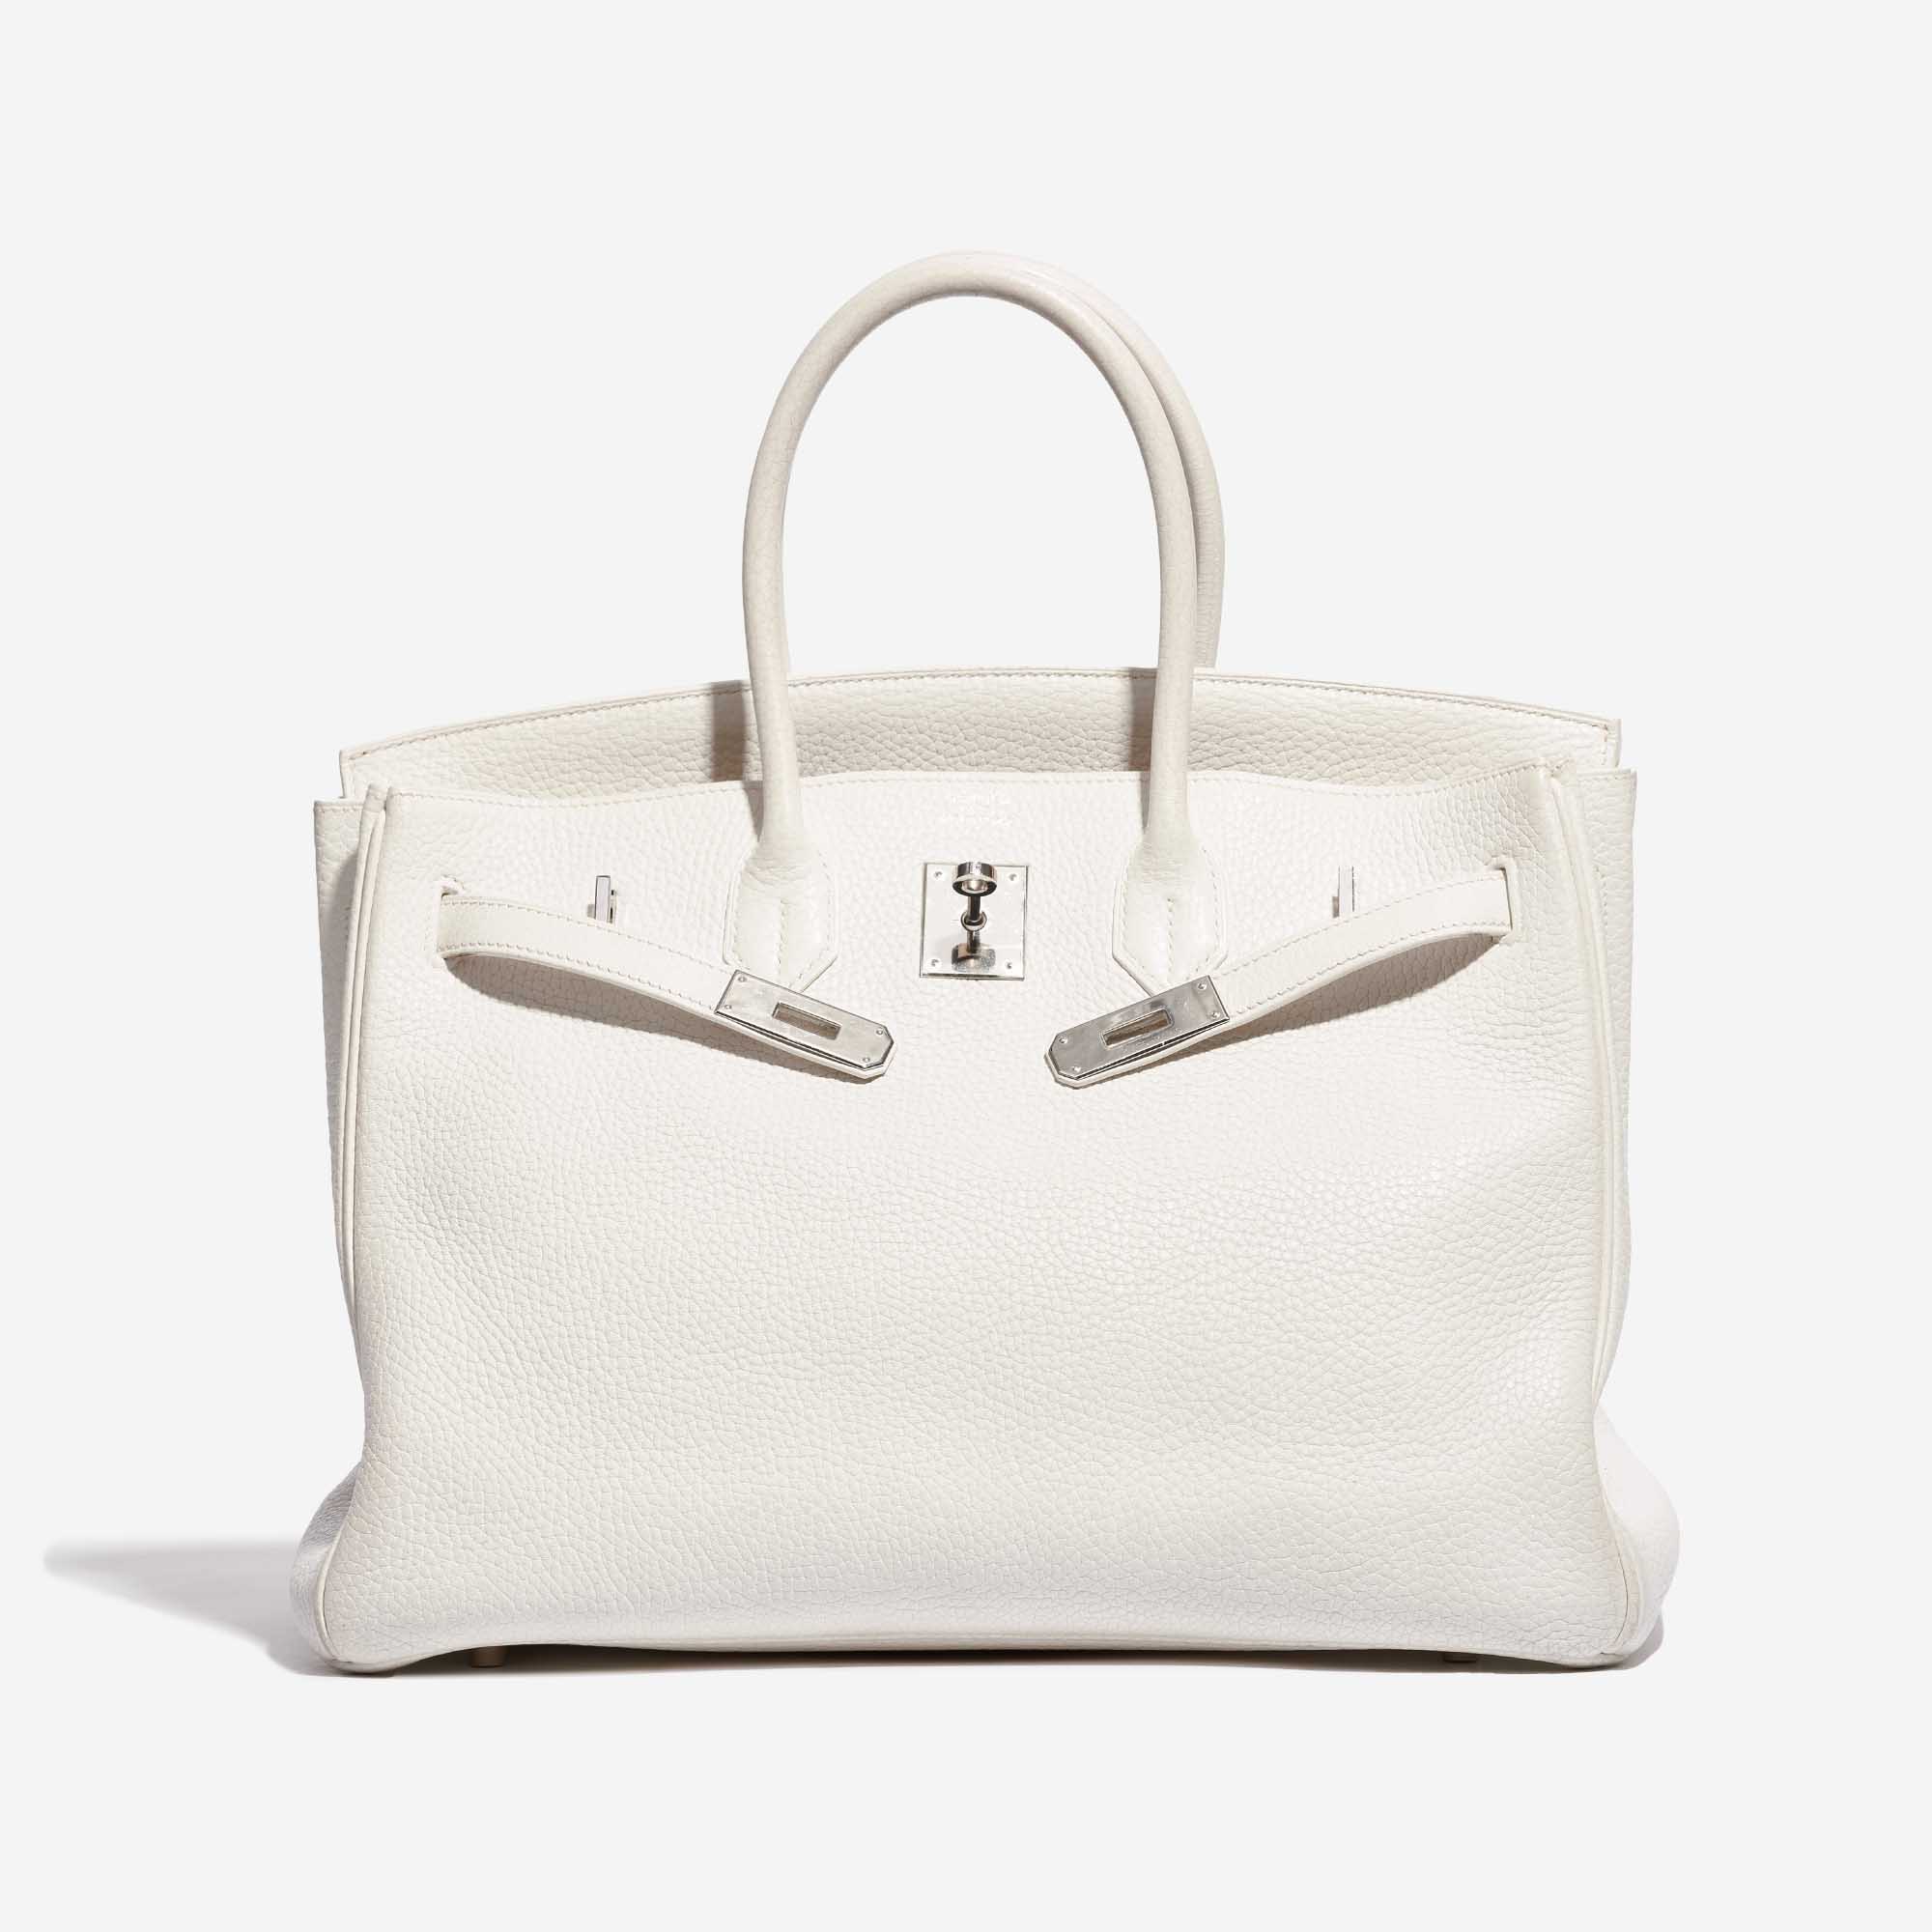 Pre-owned Hermès bag Birkin 35 Clemence White White Front Open | Verkaufen Sie Ihre Designer-Tasche auf Saclab.com